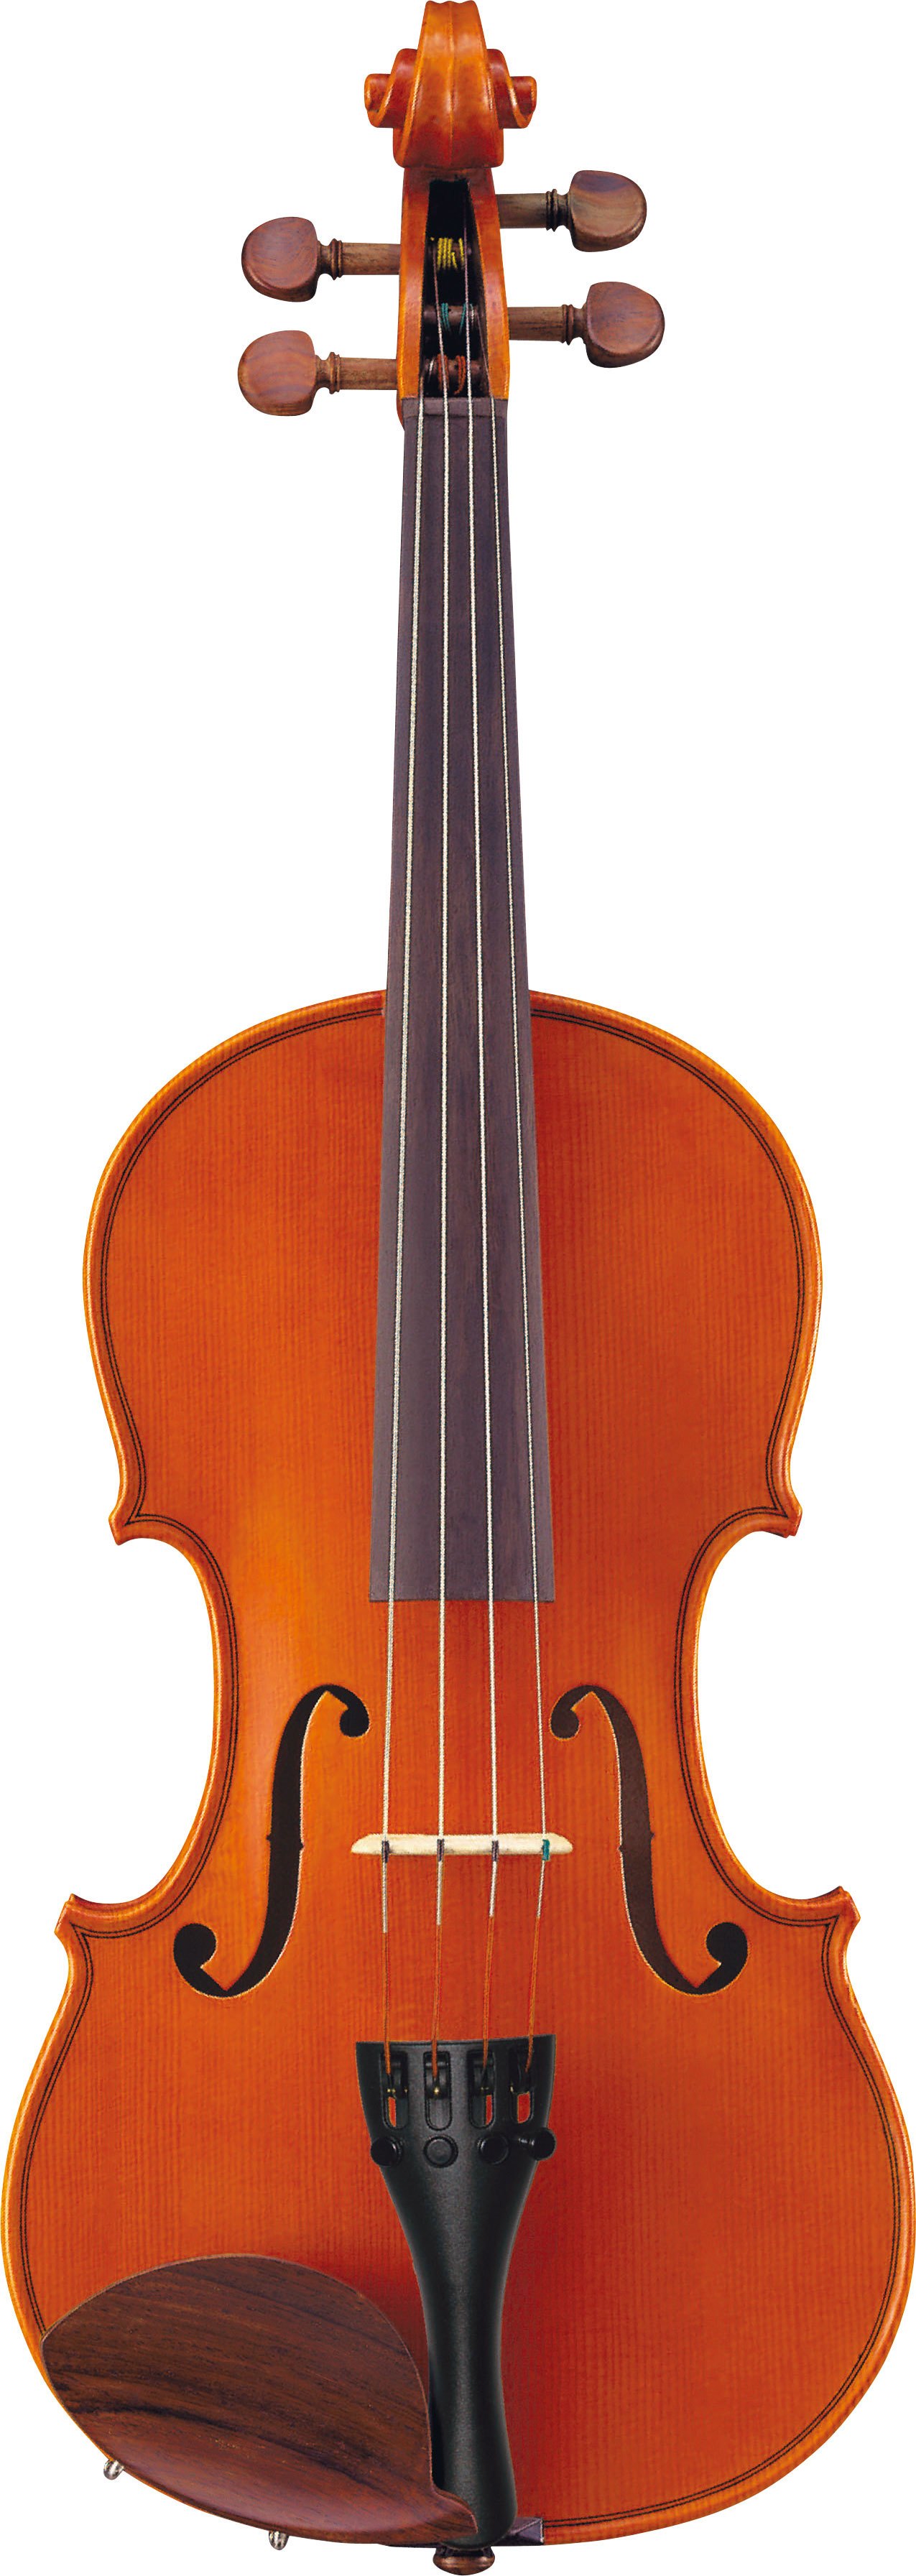 MrSilverTrumpet - Yamaha AV5-SC Acoustic Violin